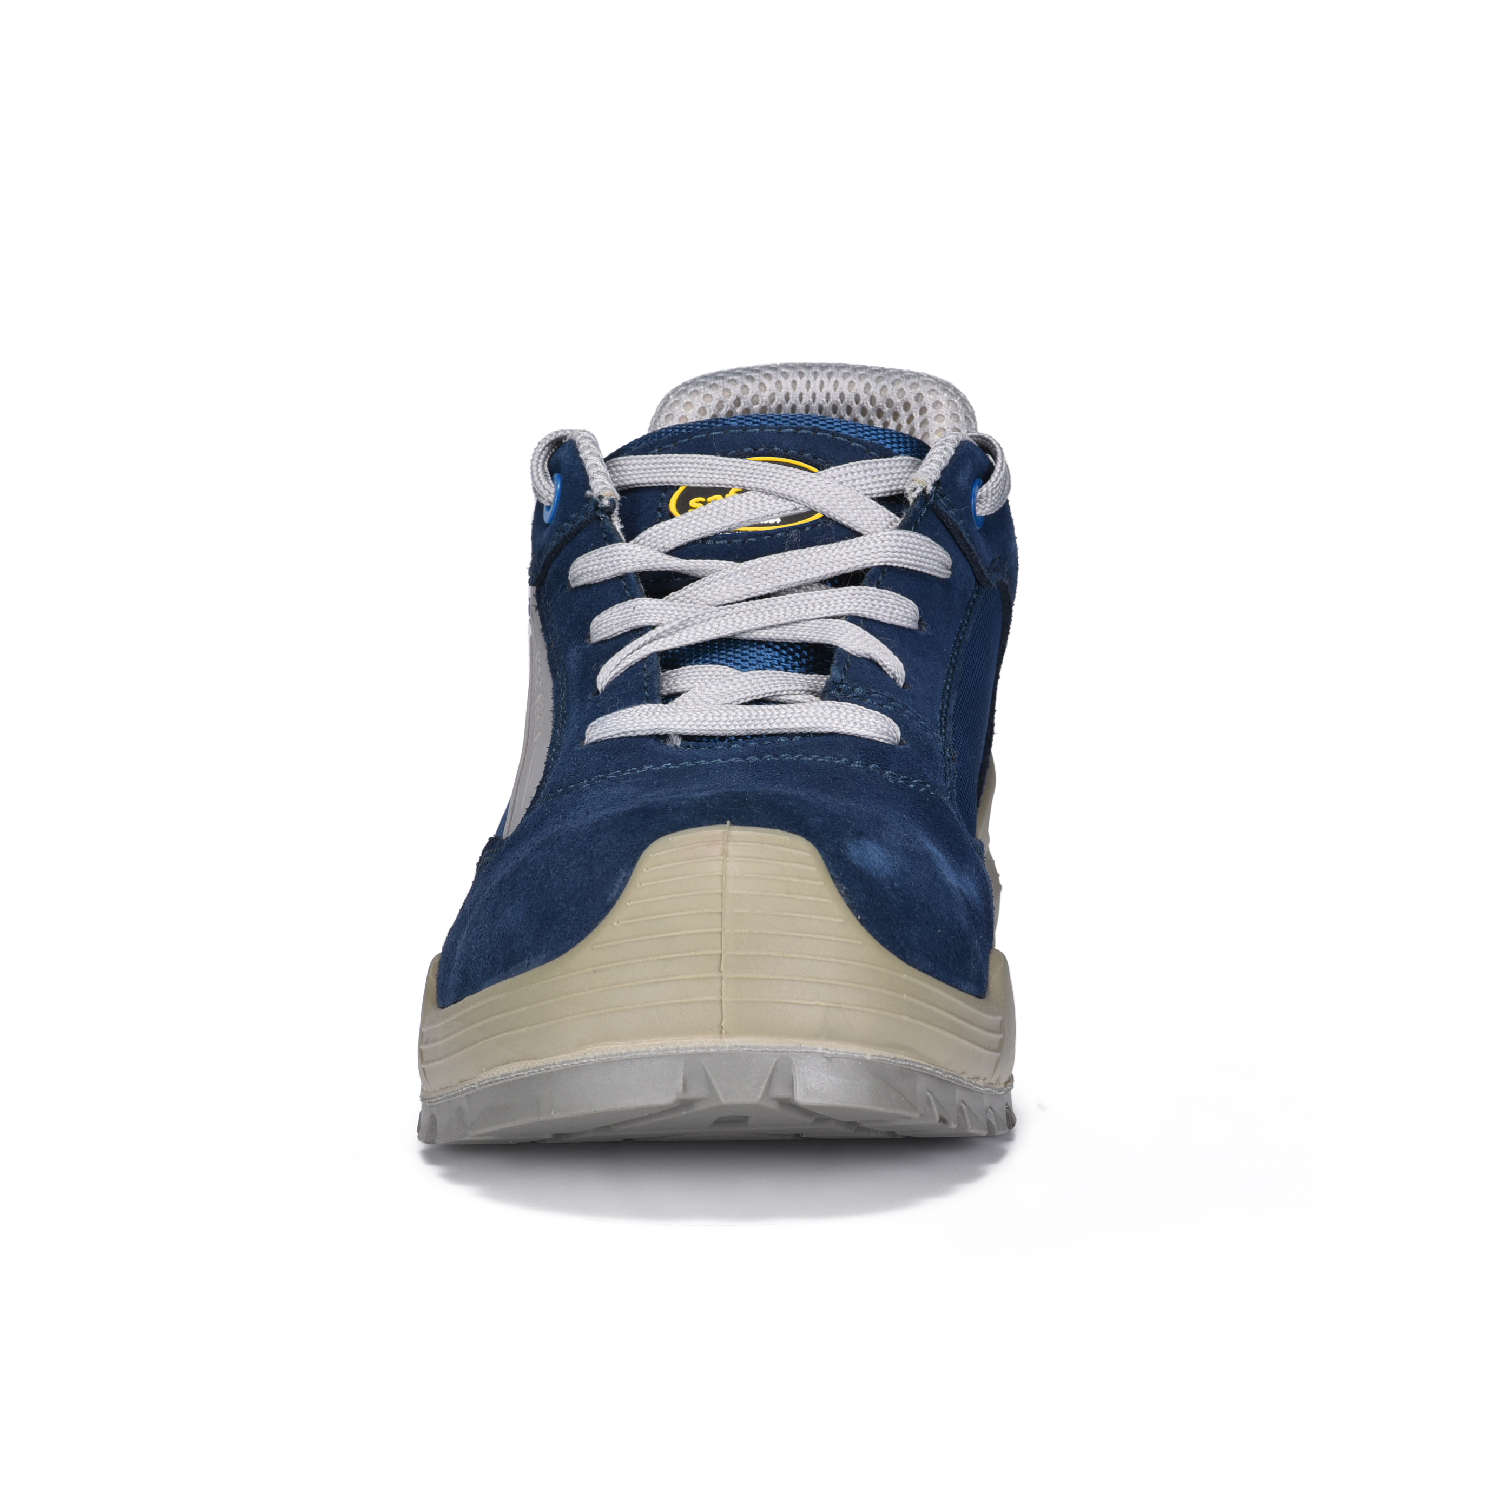 Zapatos de seguridad ligeros con punta de acero para almacén y logística L-7296 azul